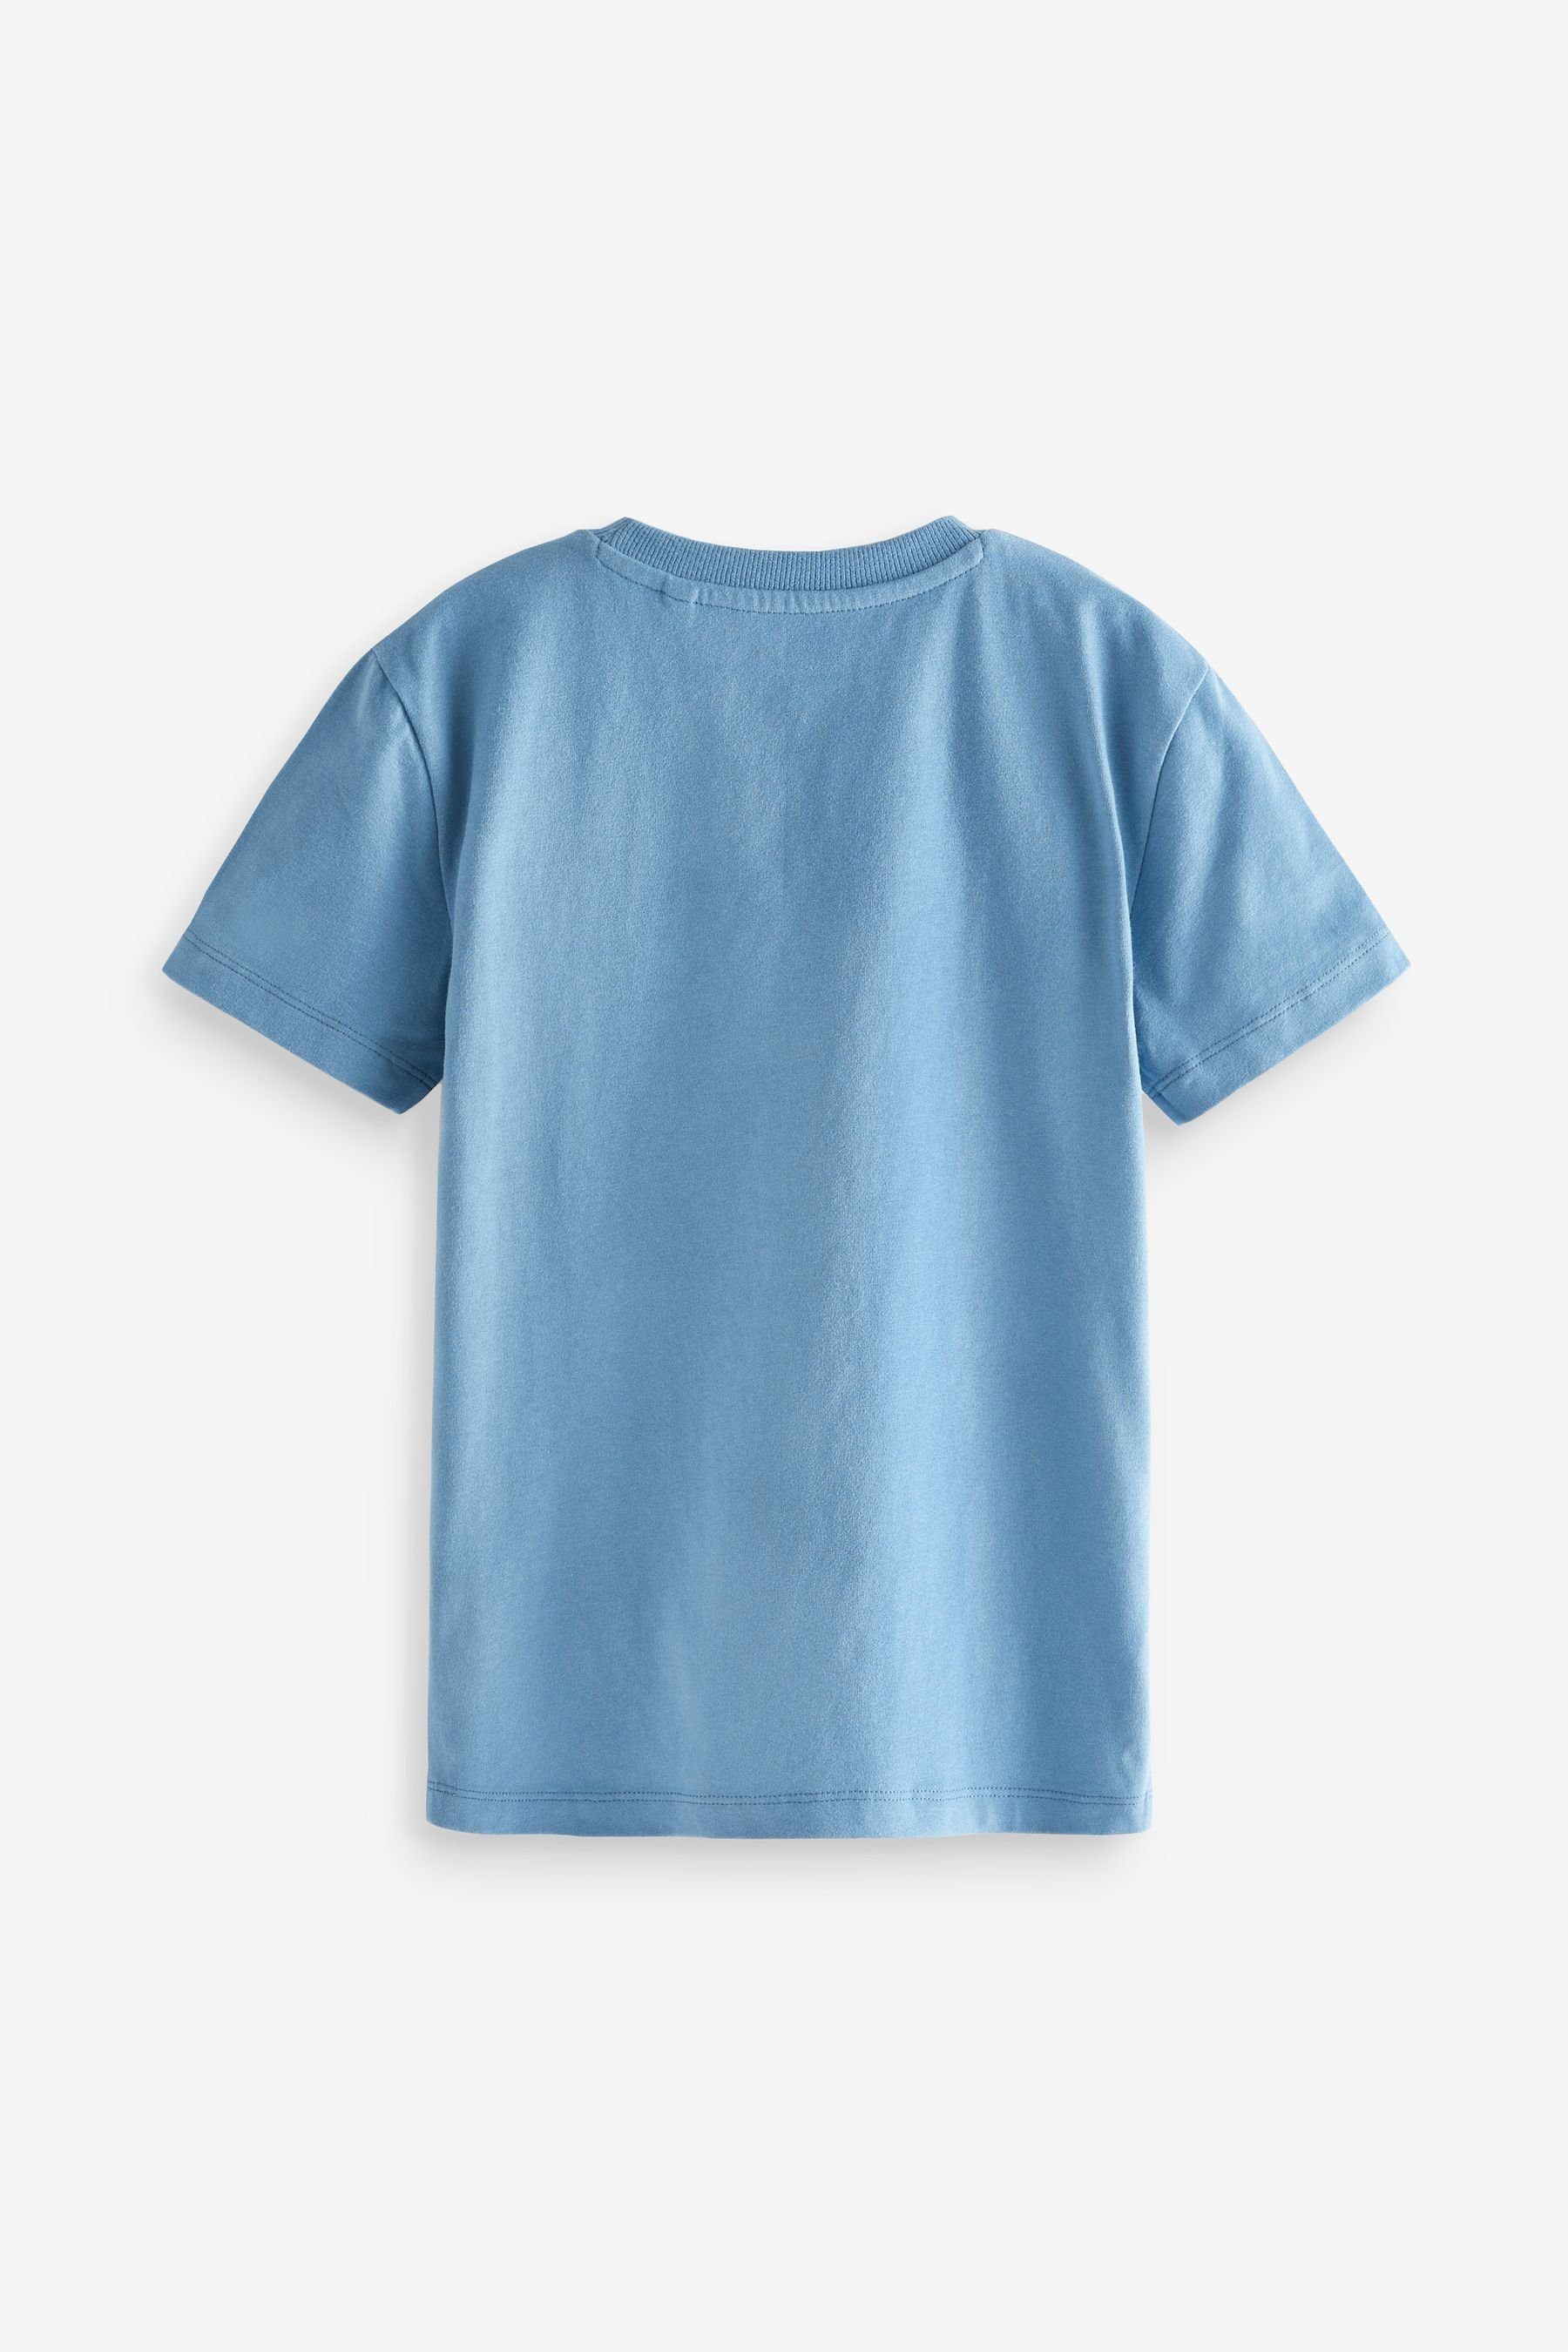 mit Kurzarm-T-Shirts Mineral Green/Blue Next 4er-Pack (4-tlg) T-Shirt Hirsch-Stickerei